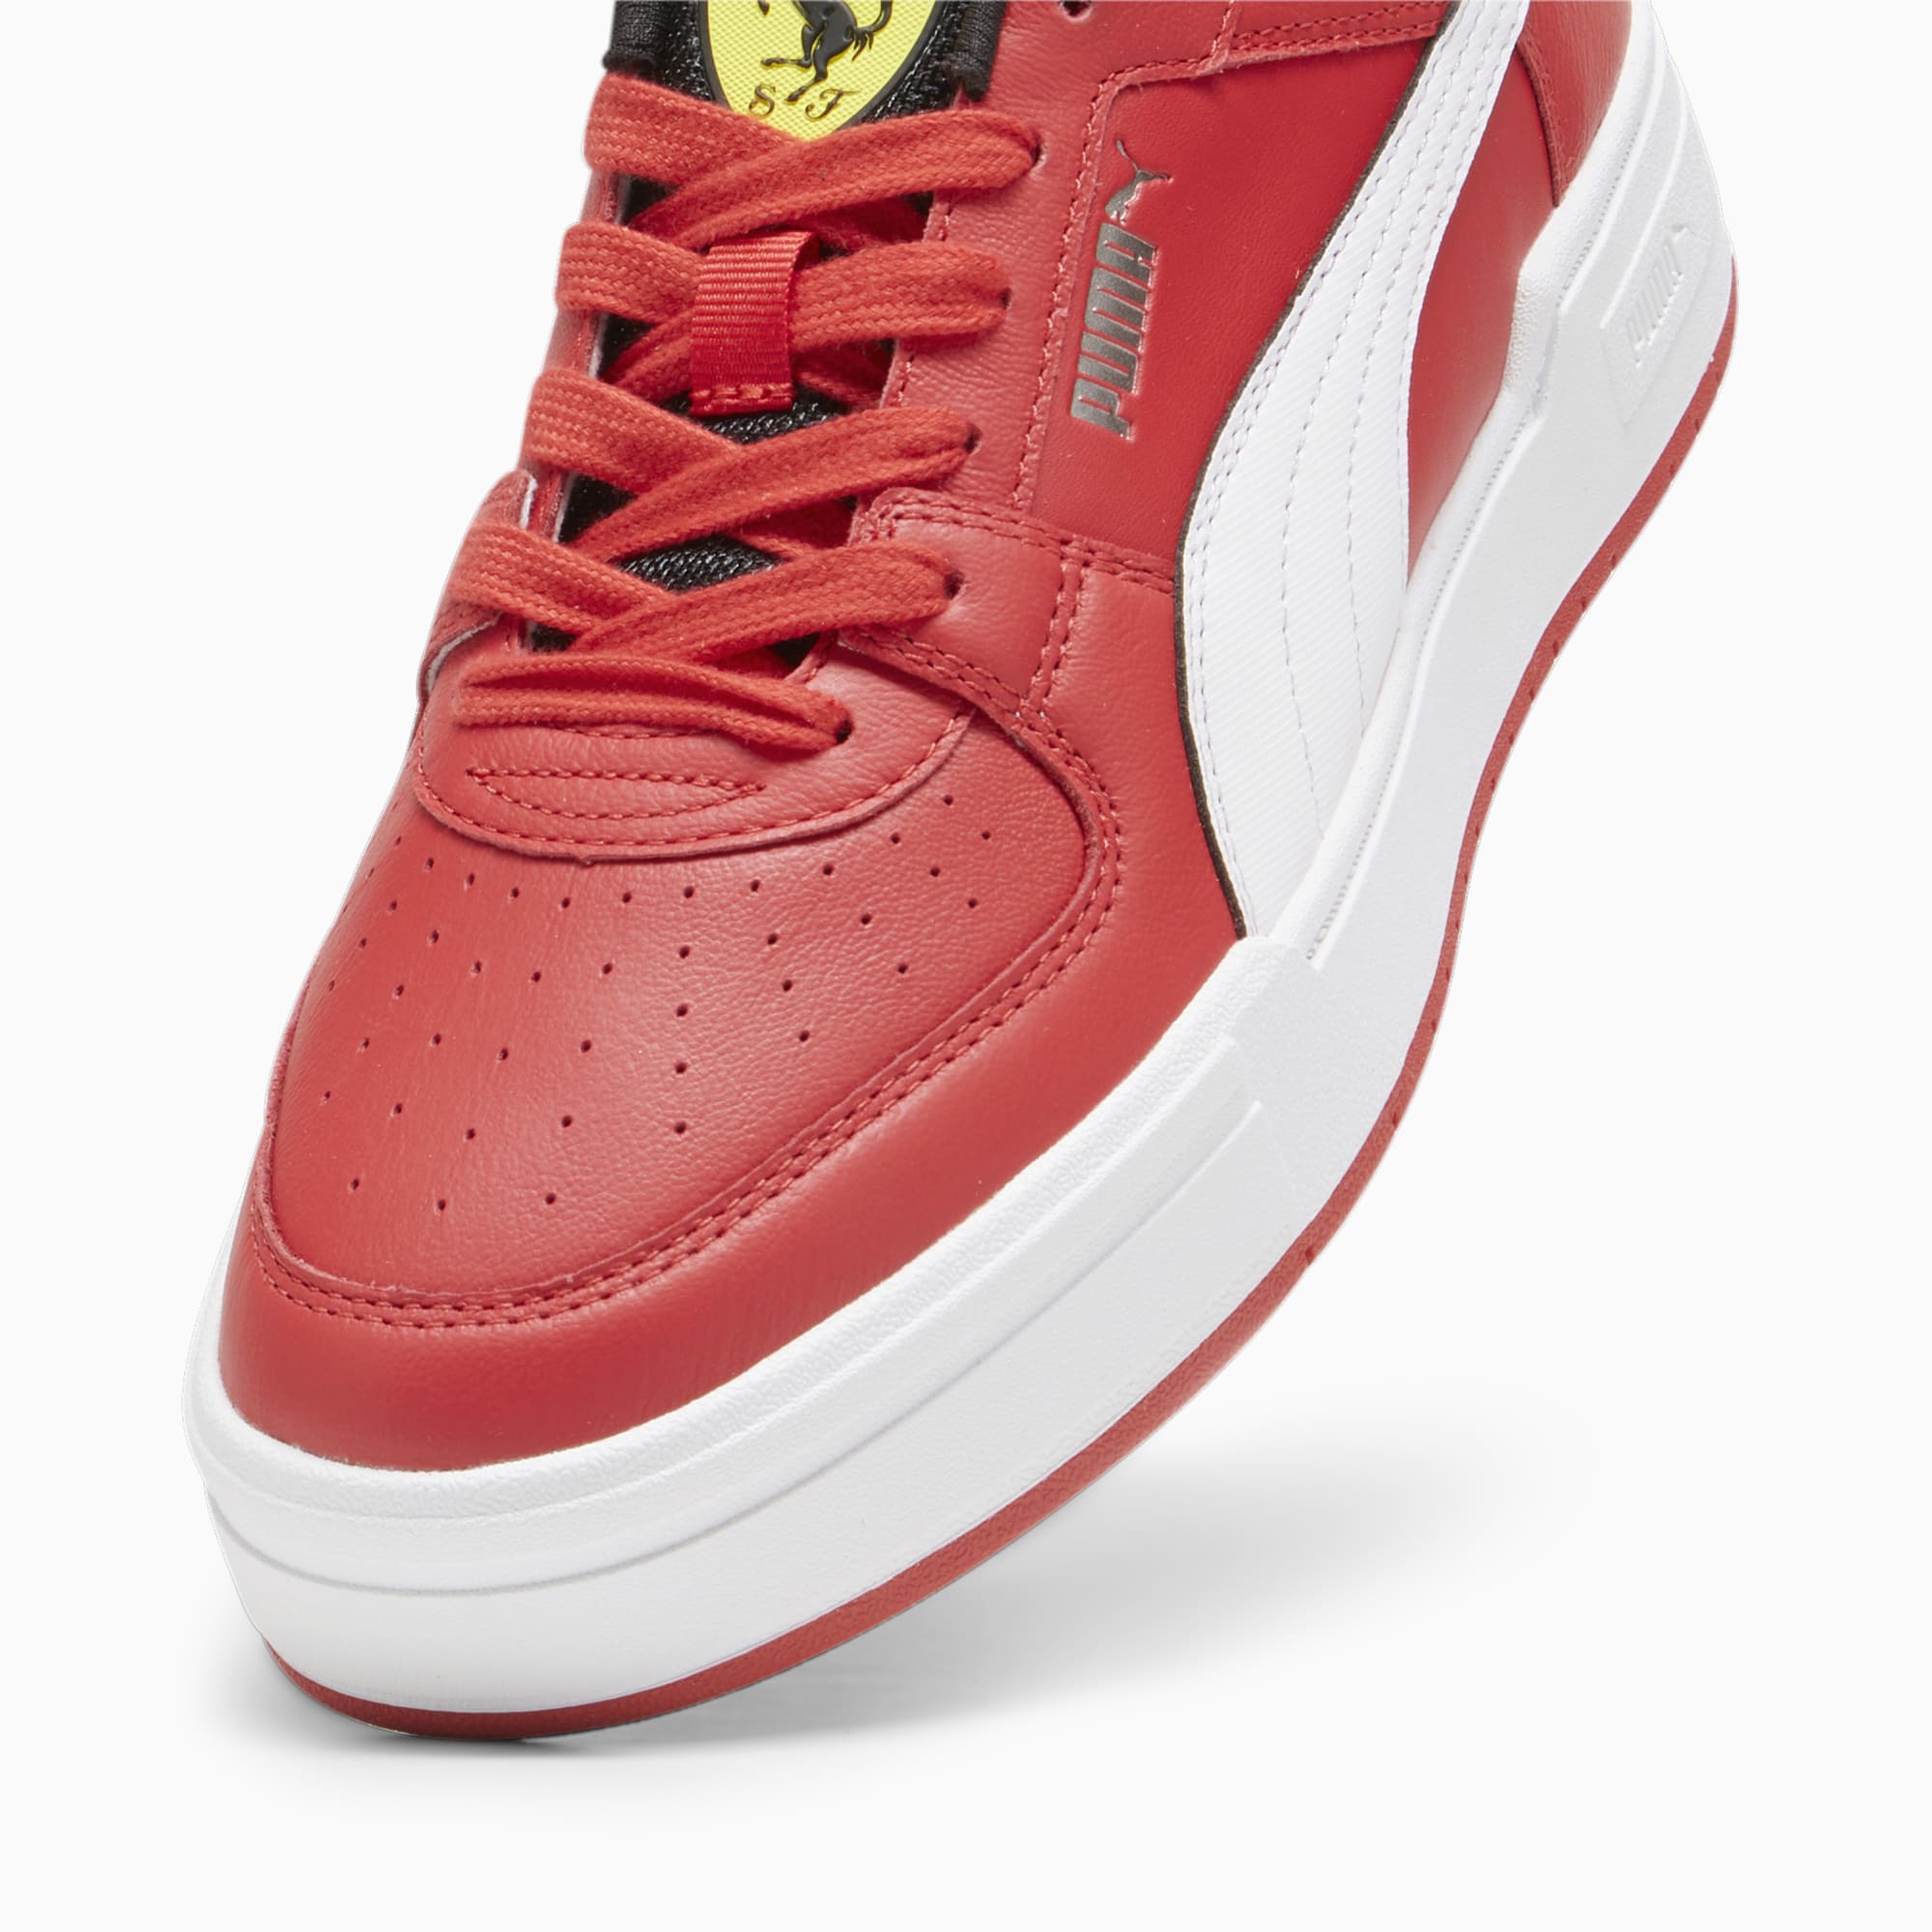 PUMA Chaussure Sneakers CA Pro Scuderia Ferrari, Rouge/Blanc